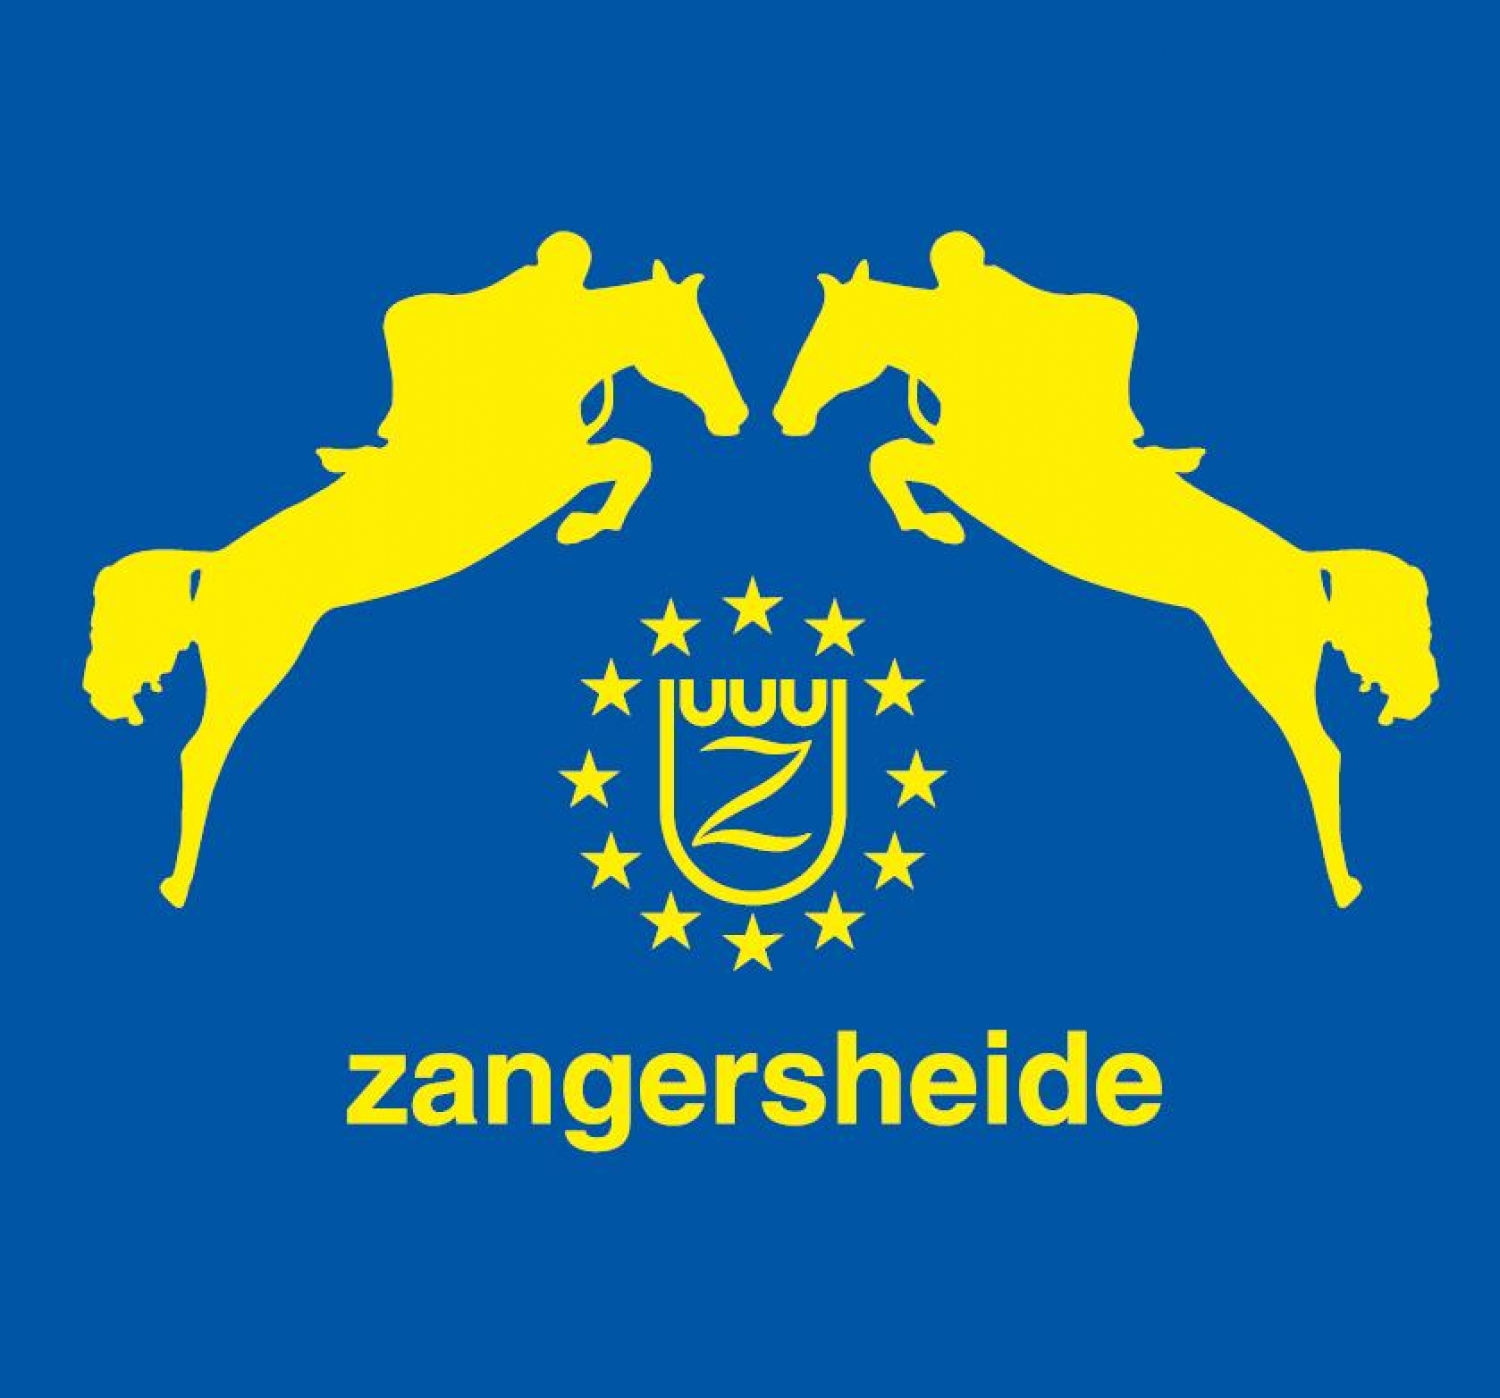 zangersheide logo1